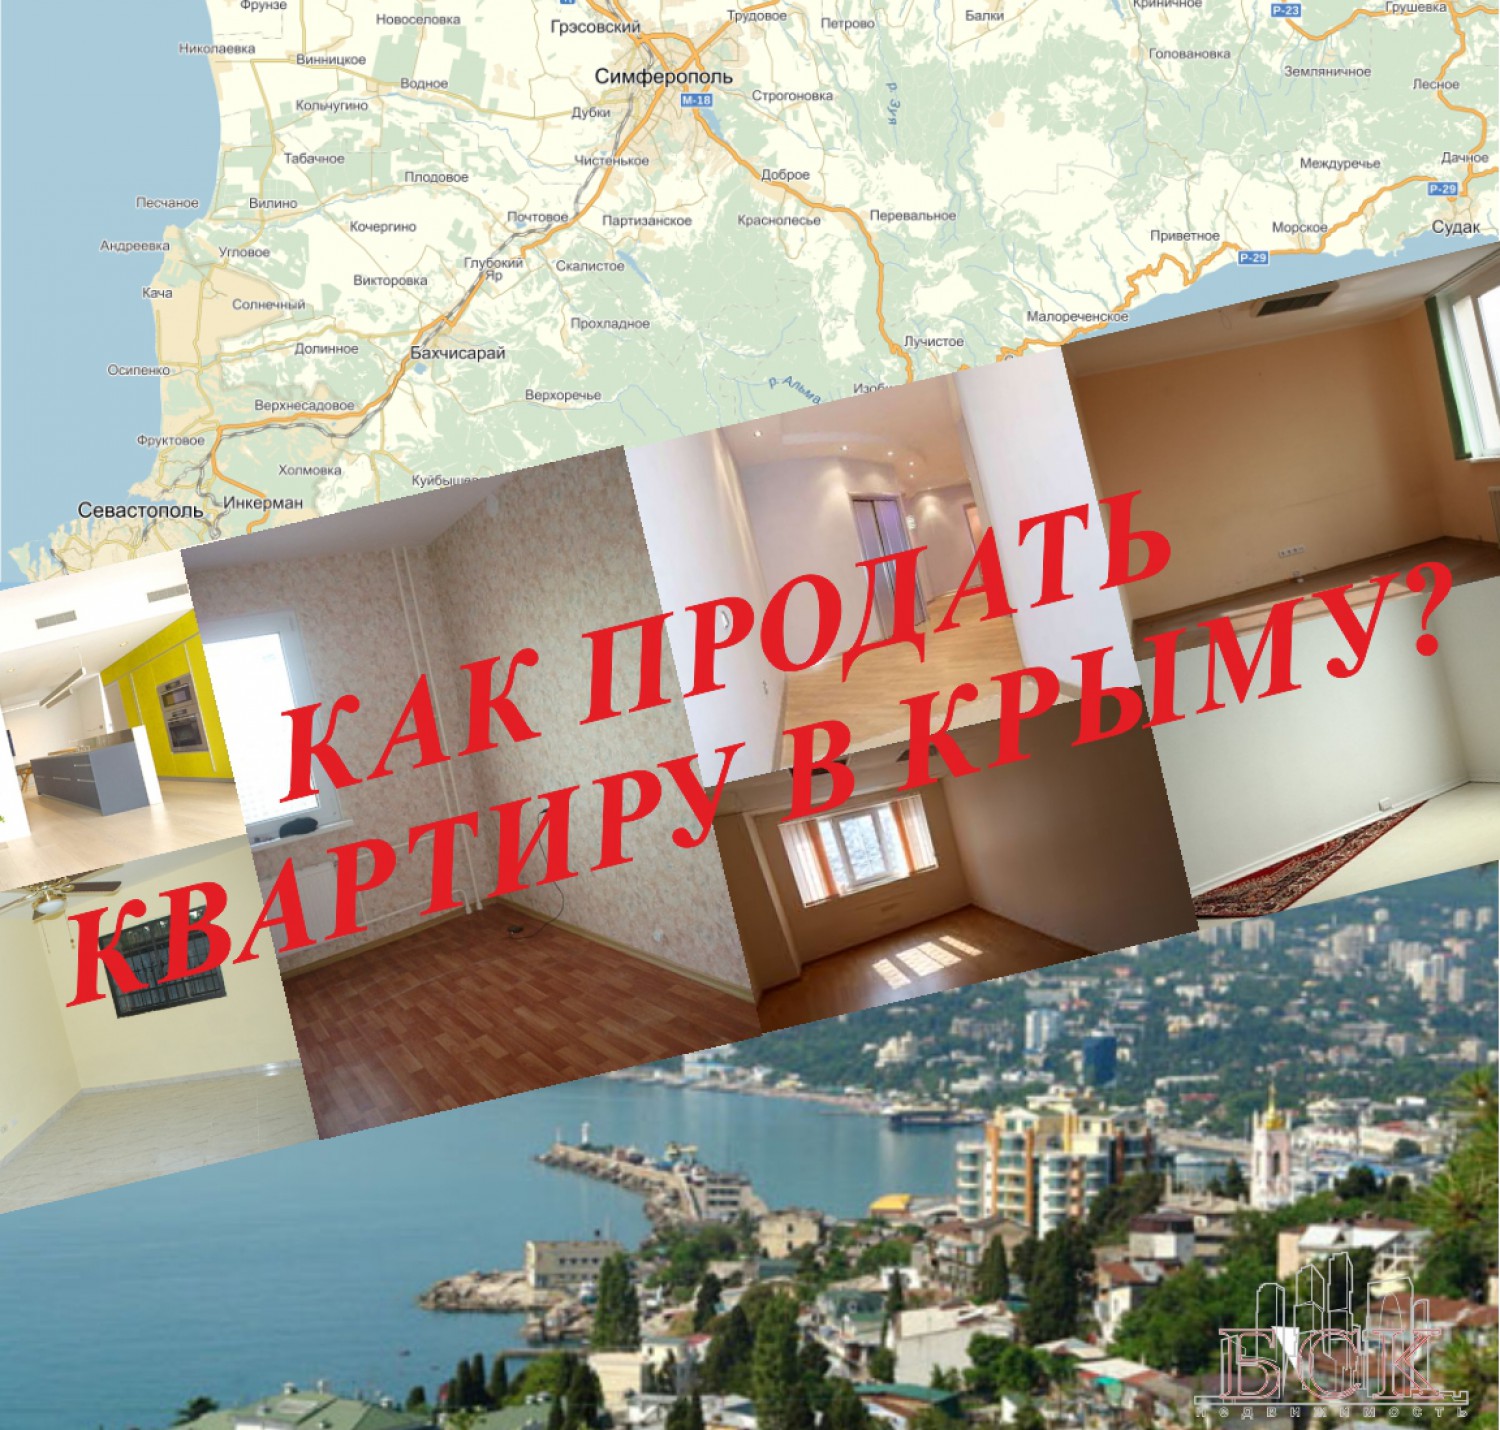 Продать квартиру в Крыму